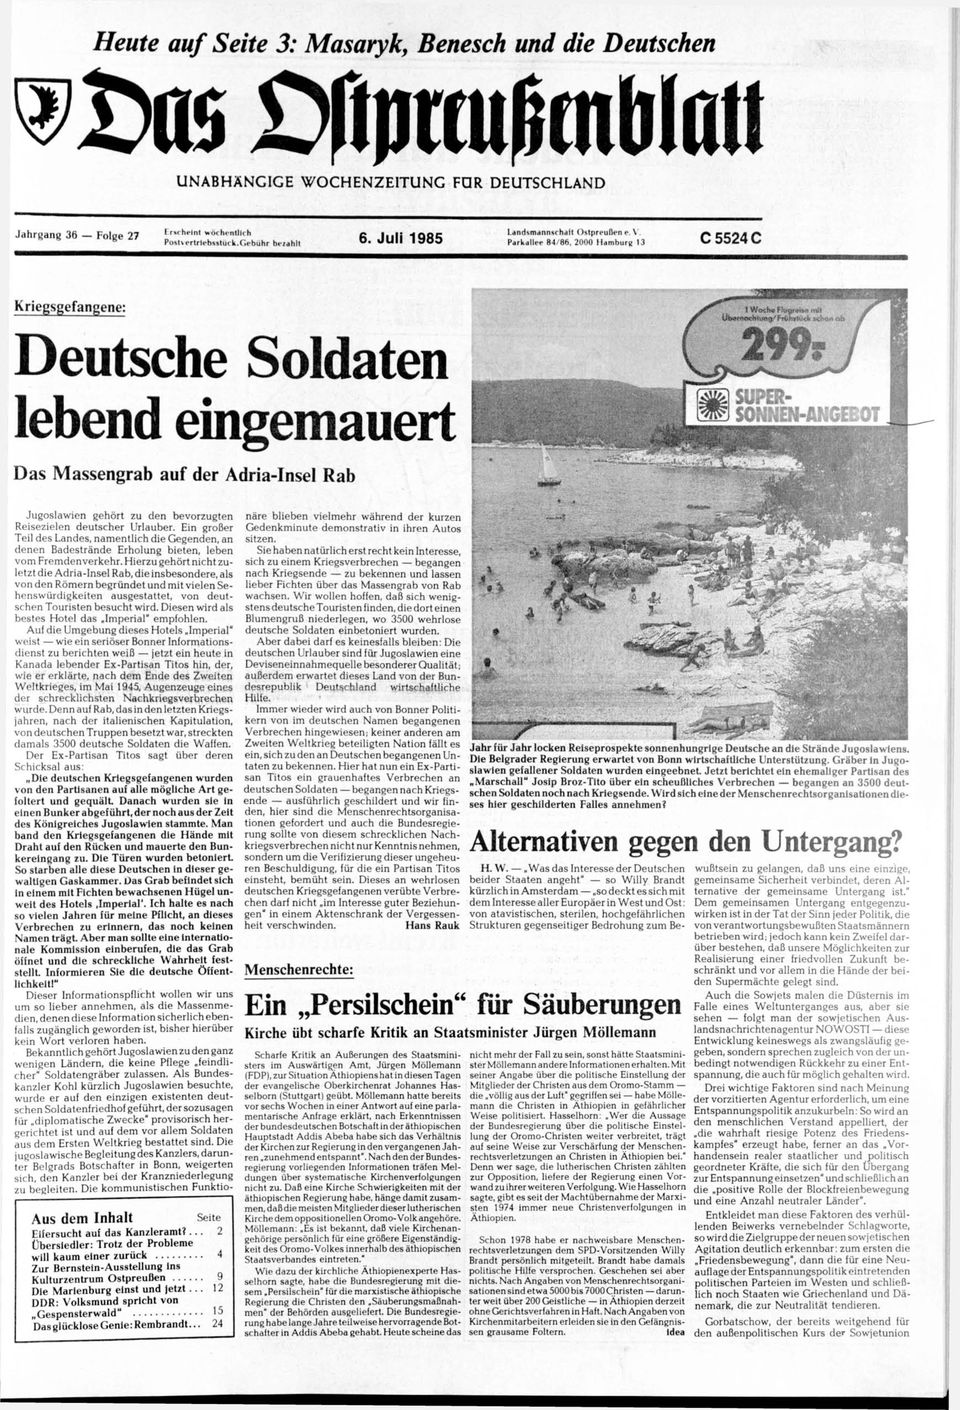 2000 Mamburg 13 C5524C Kriegsgefangene: Deutsche Soldaten lebend eingemauert Das Massengrab auf der Adria-Insel Rab Jugoslawien gehört zu den bevorzugten Reisezielen deutscher Urlauber.